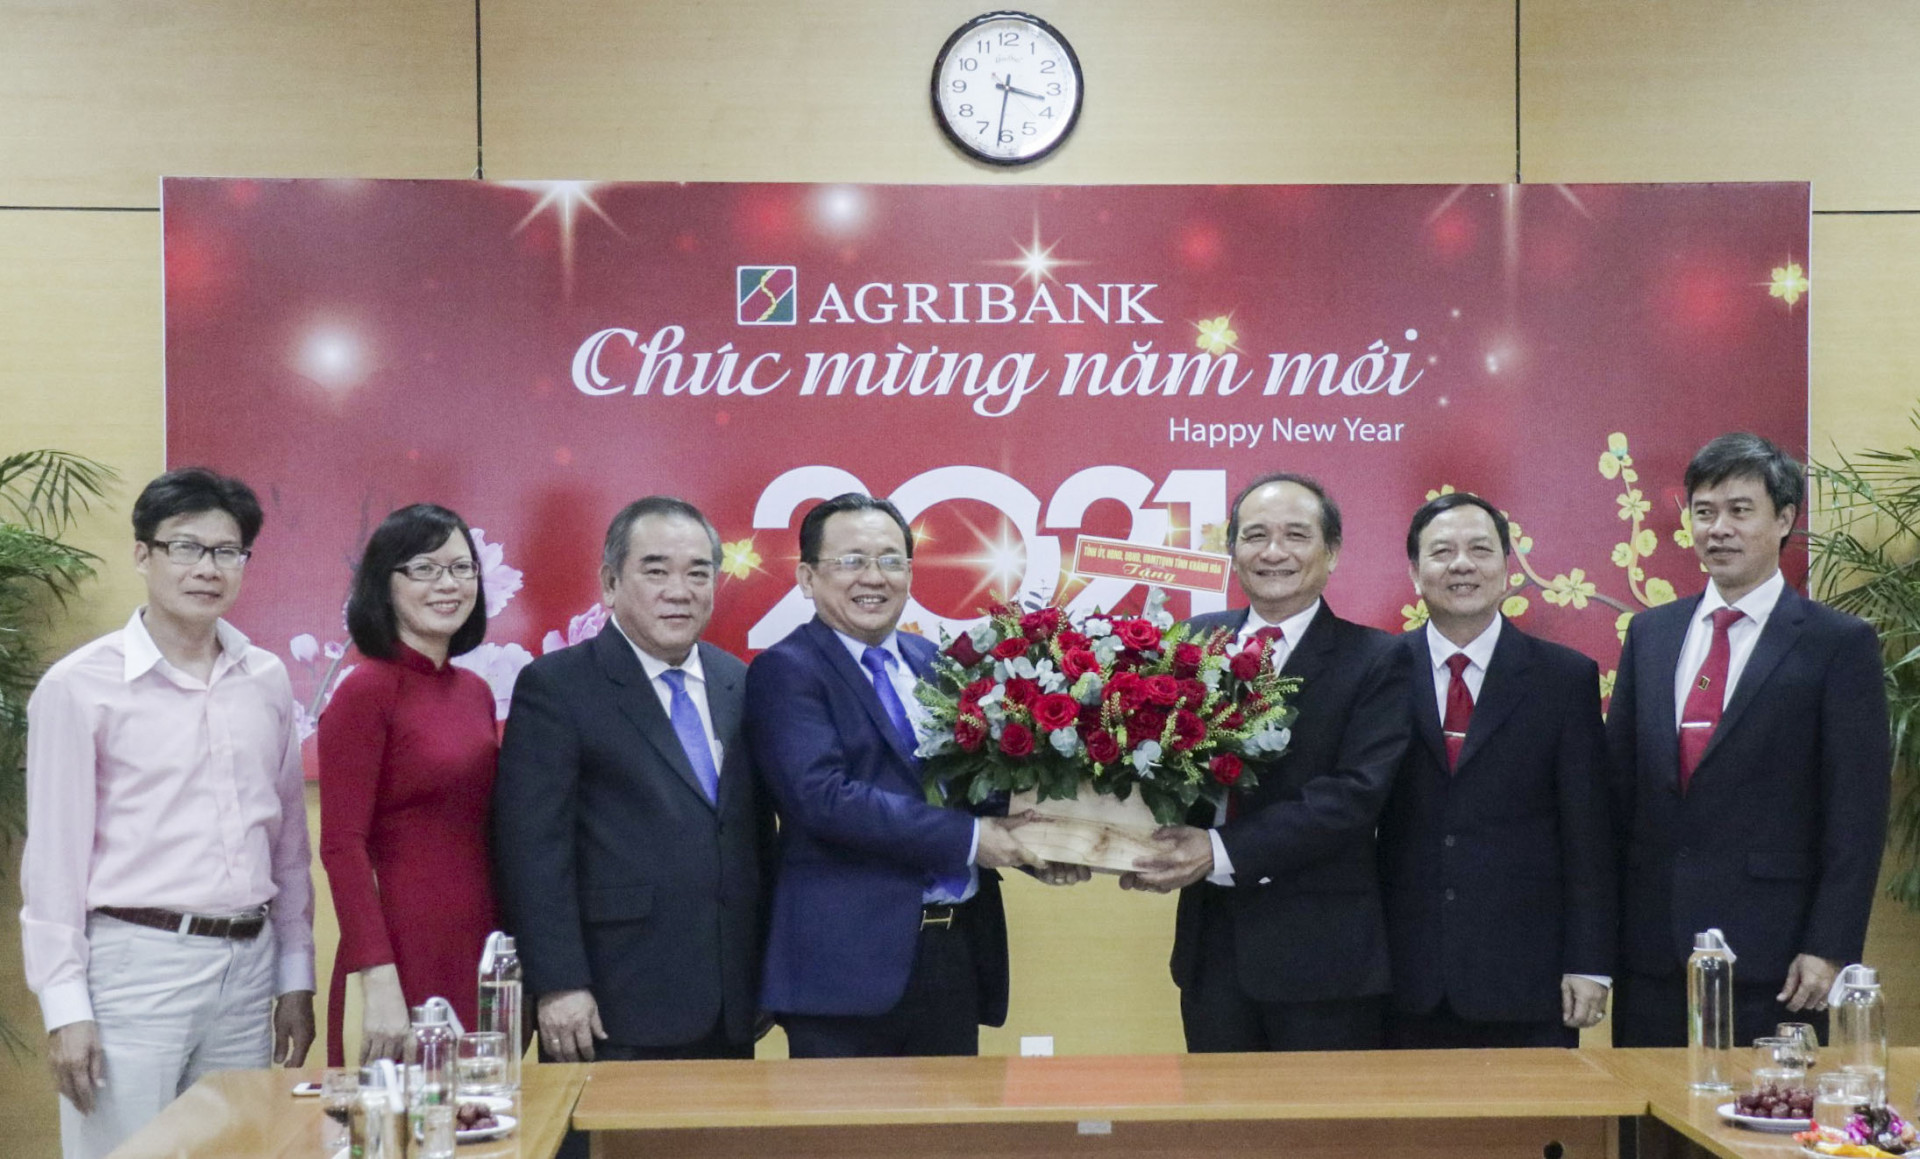 Ông Lê Hữu Hoàng tặng hoa chúc mừng năm mới Ngân hàng Agribank chi nhánh Khánh Hòa.